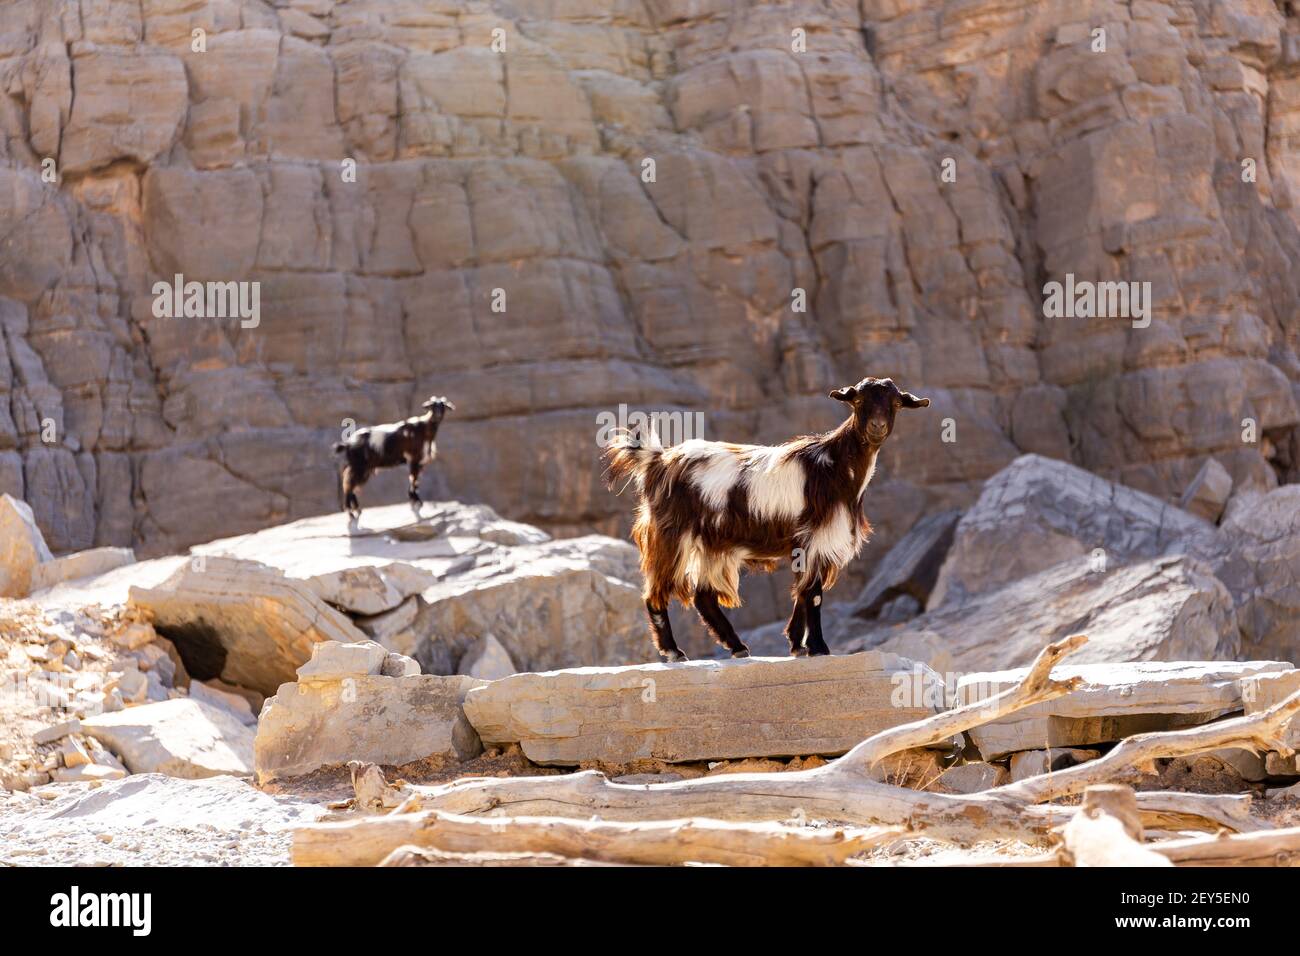 Deux chèvres femelles poilues noires et blanches (does, nannies) se tenant sur les rochers de la chaîne de montagnes Jebel JAIS, Émirats arabes Unis. Banque D'Images